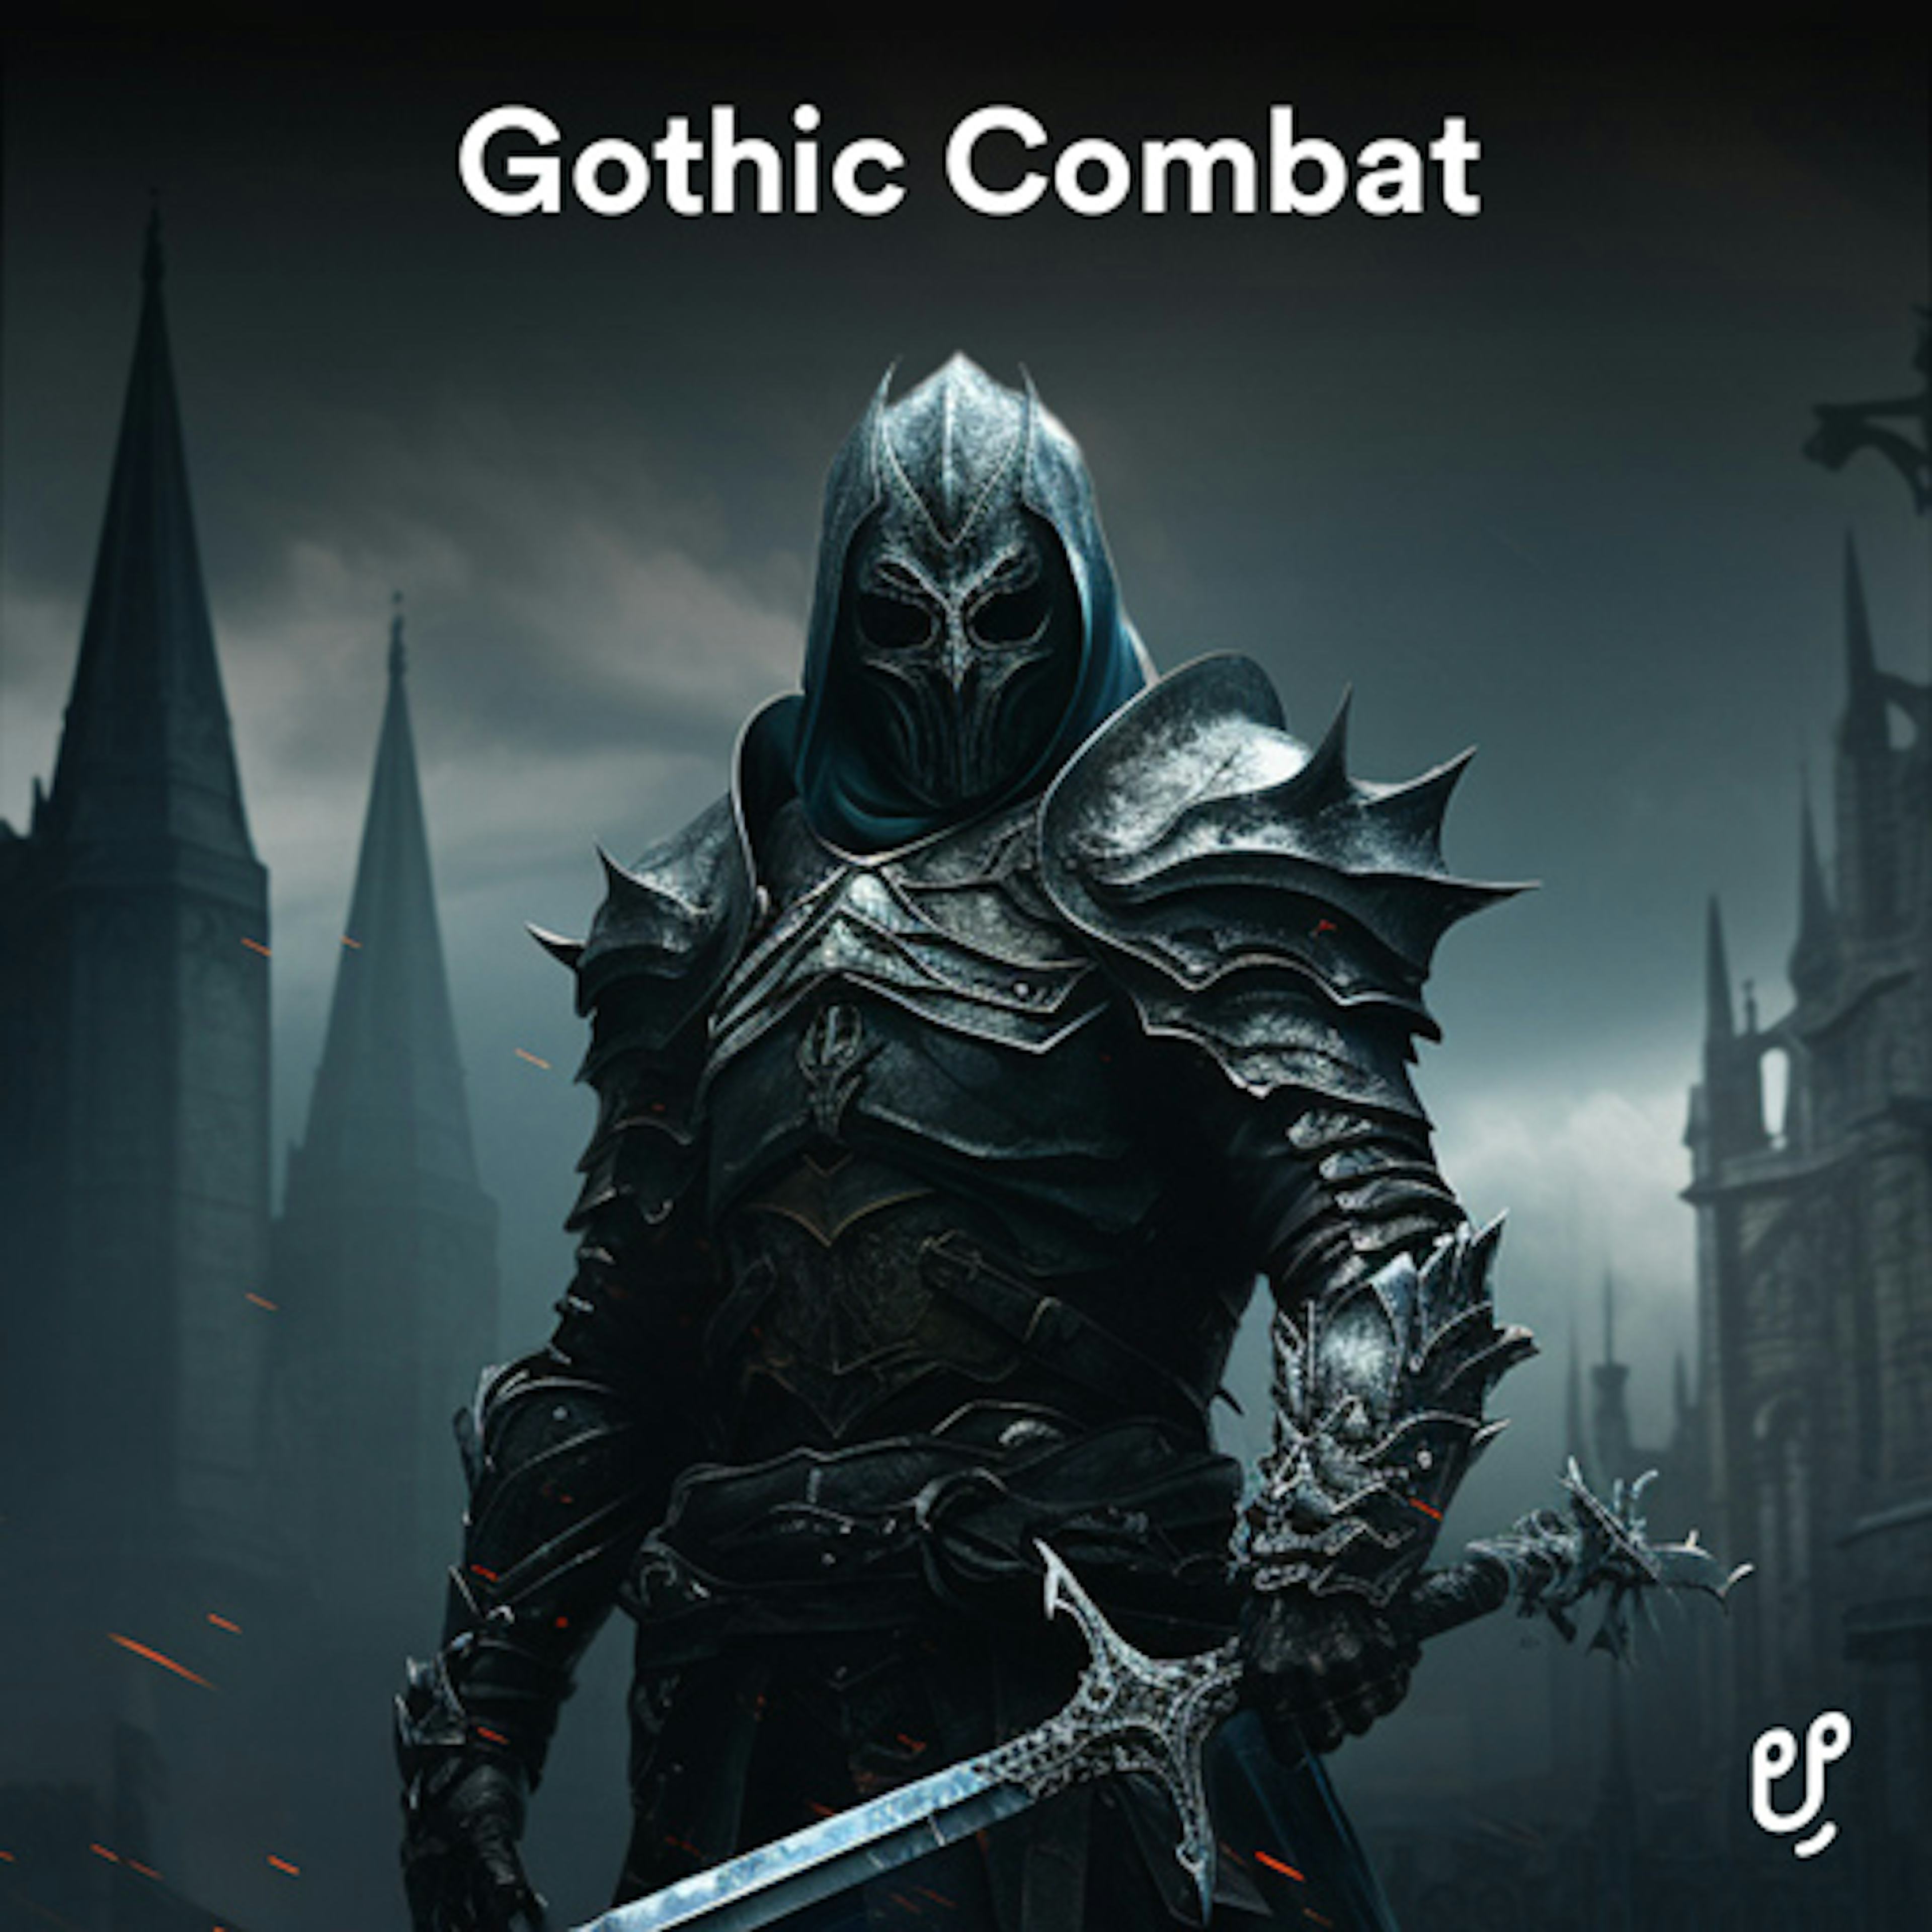 Gothic Combat artwork